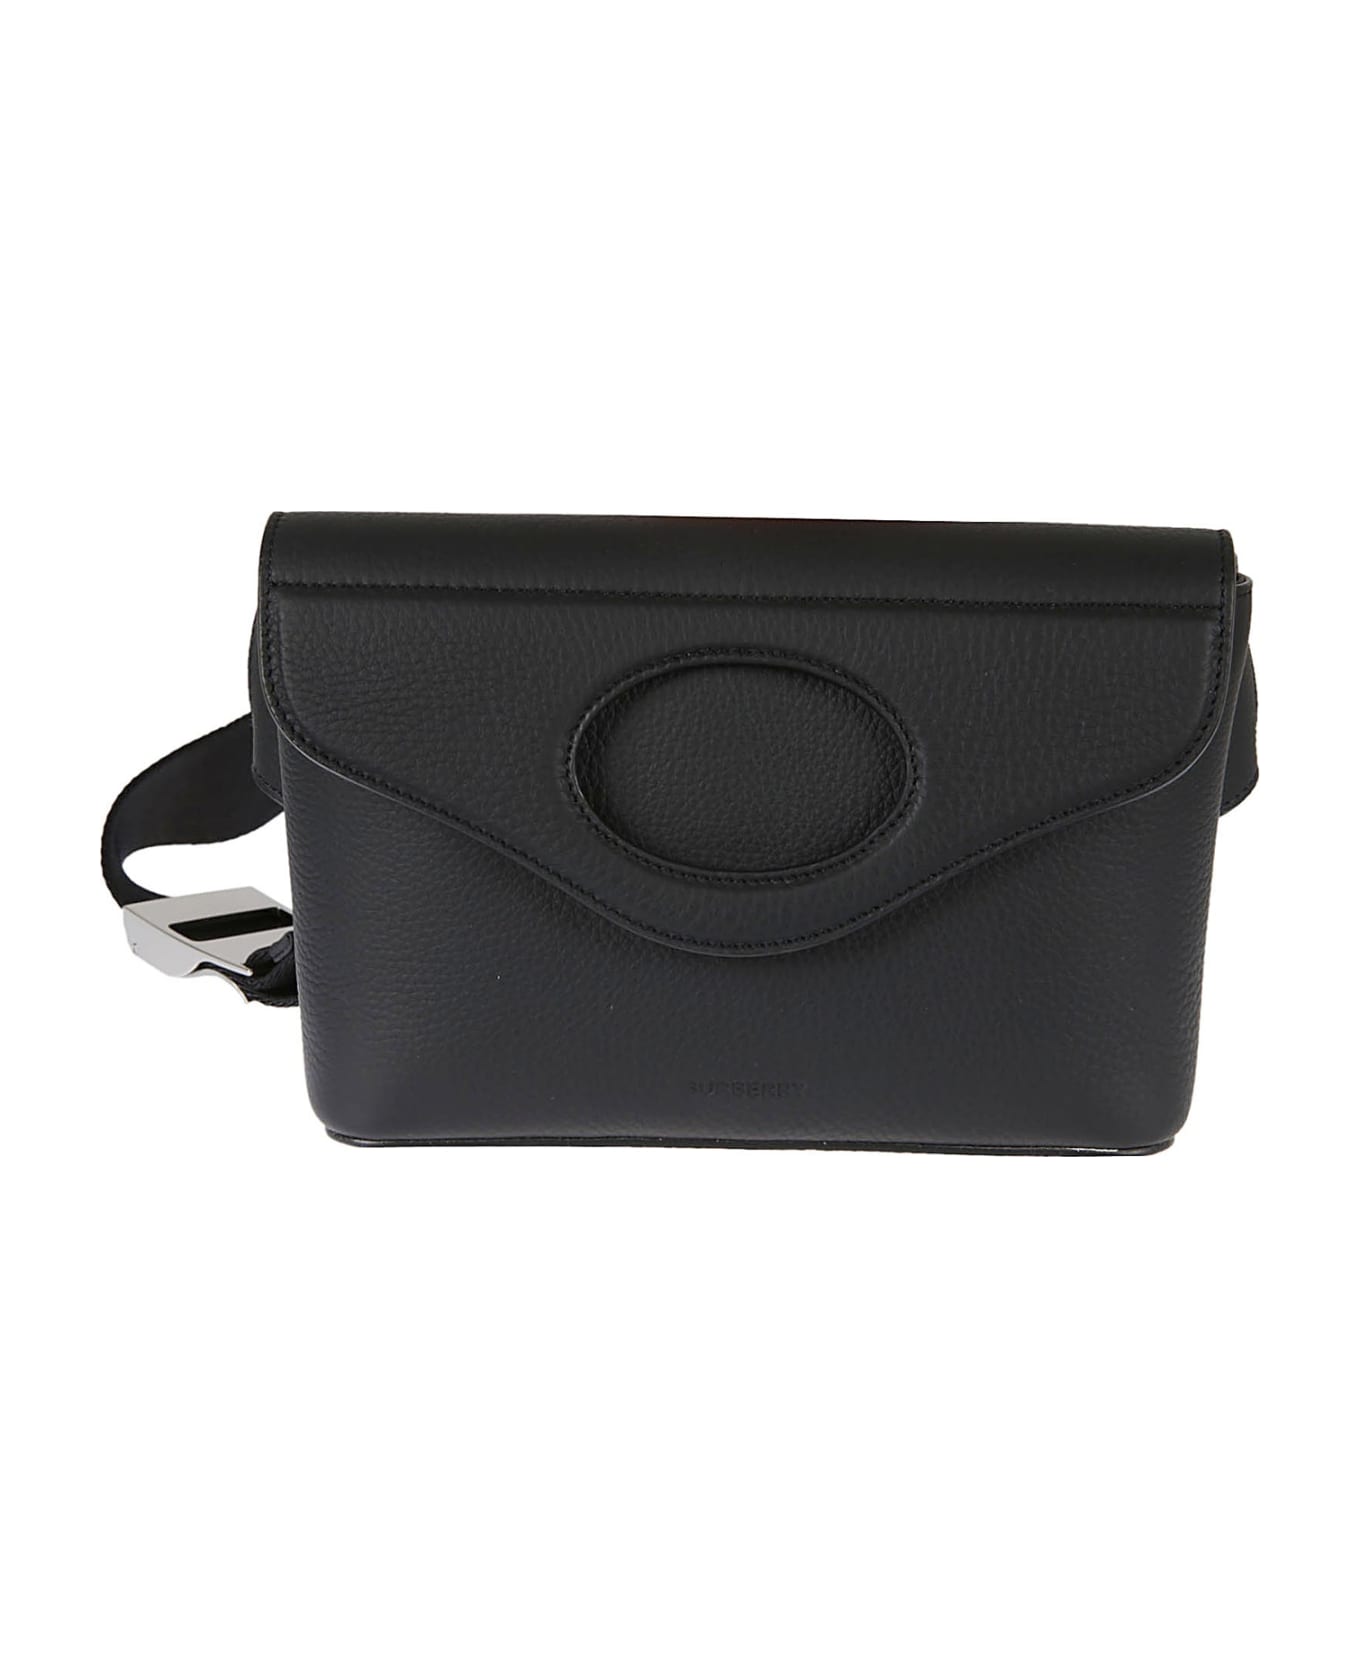 Burberry Leather Belt Bag - Black